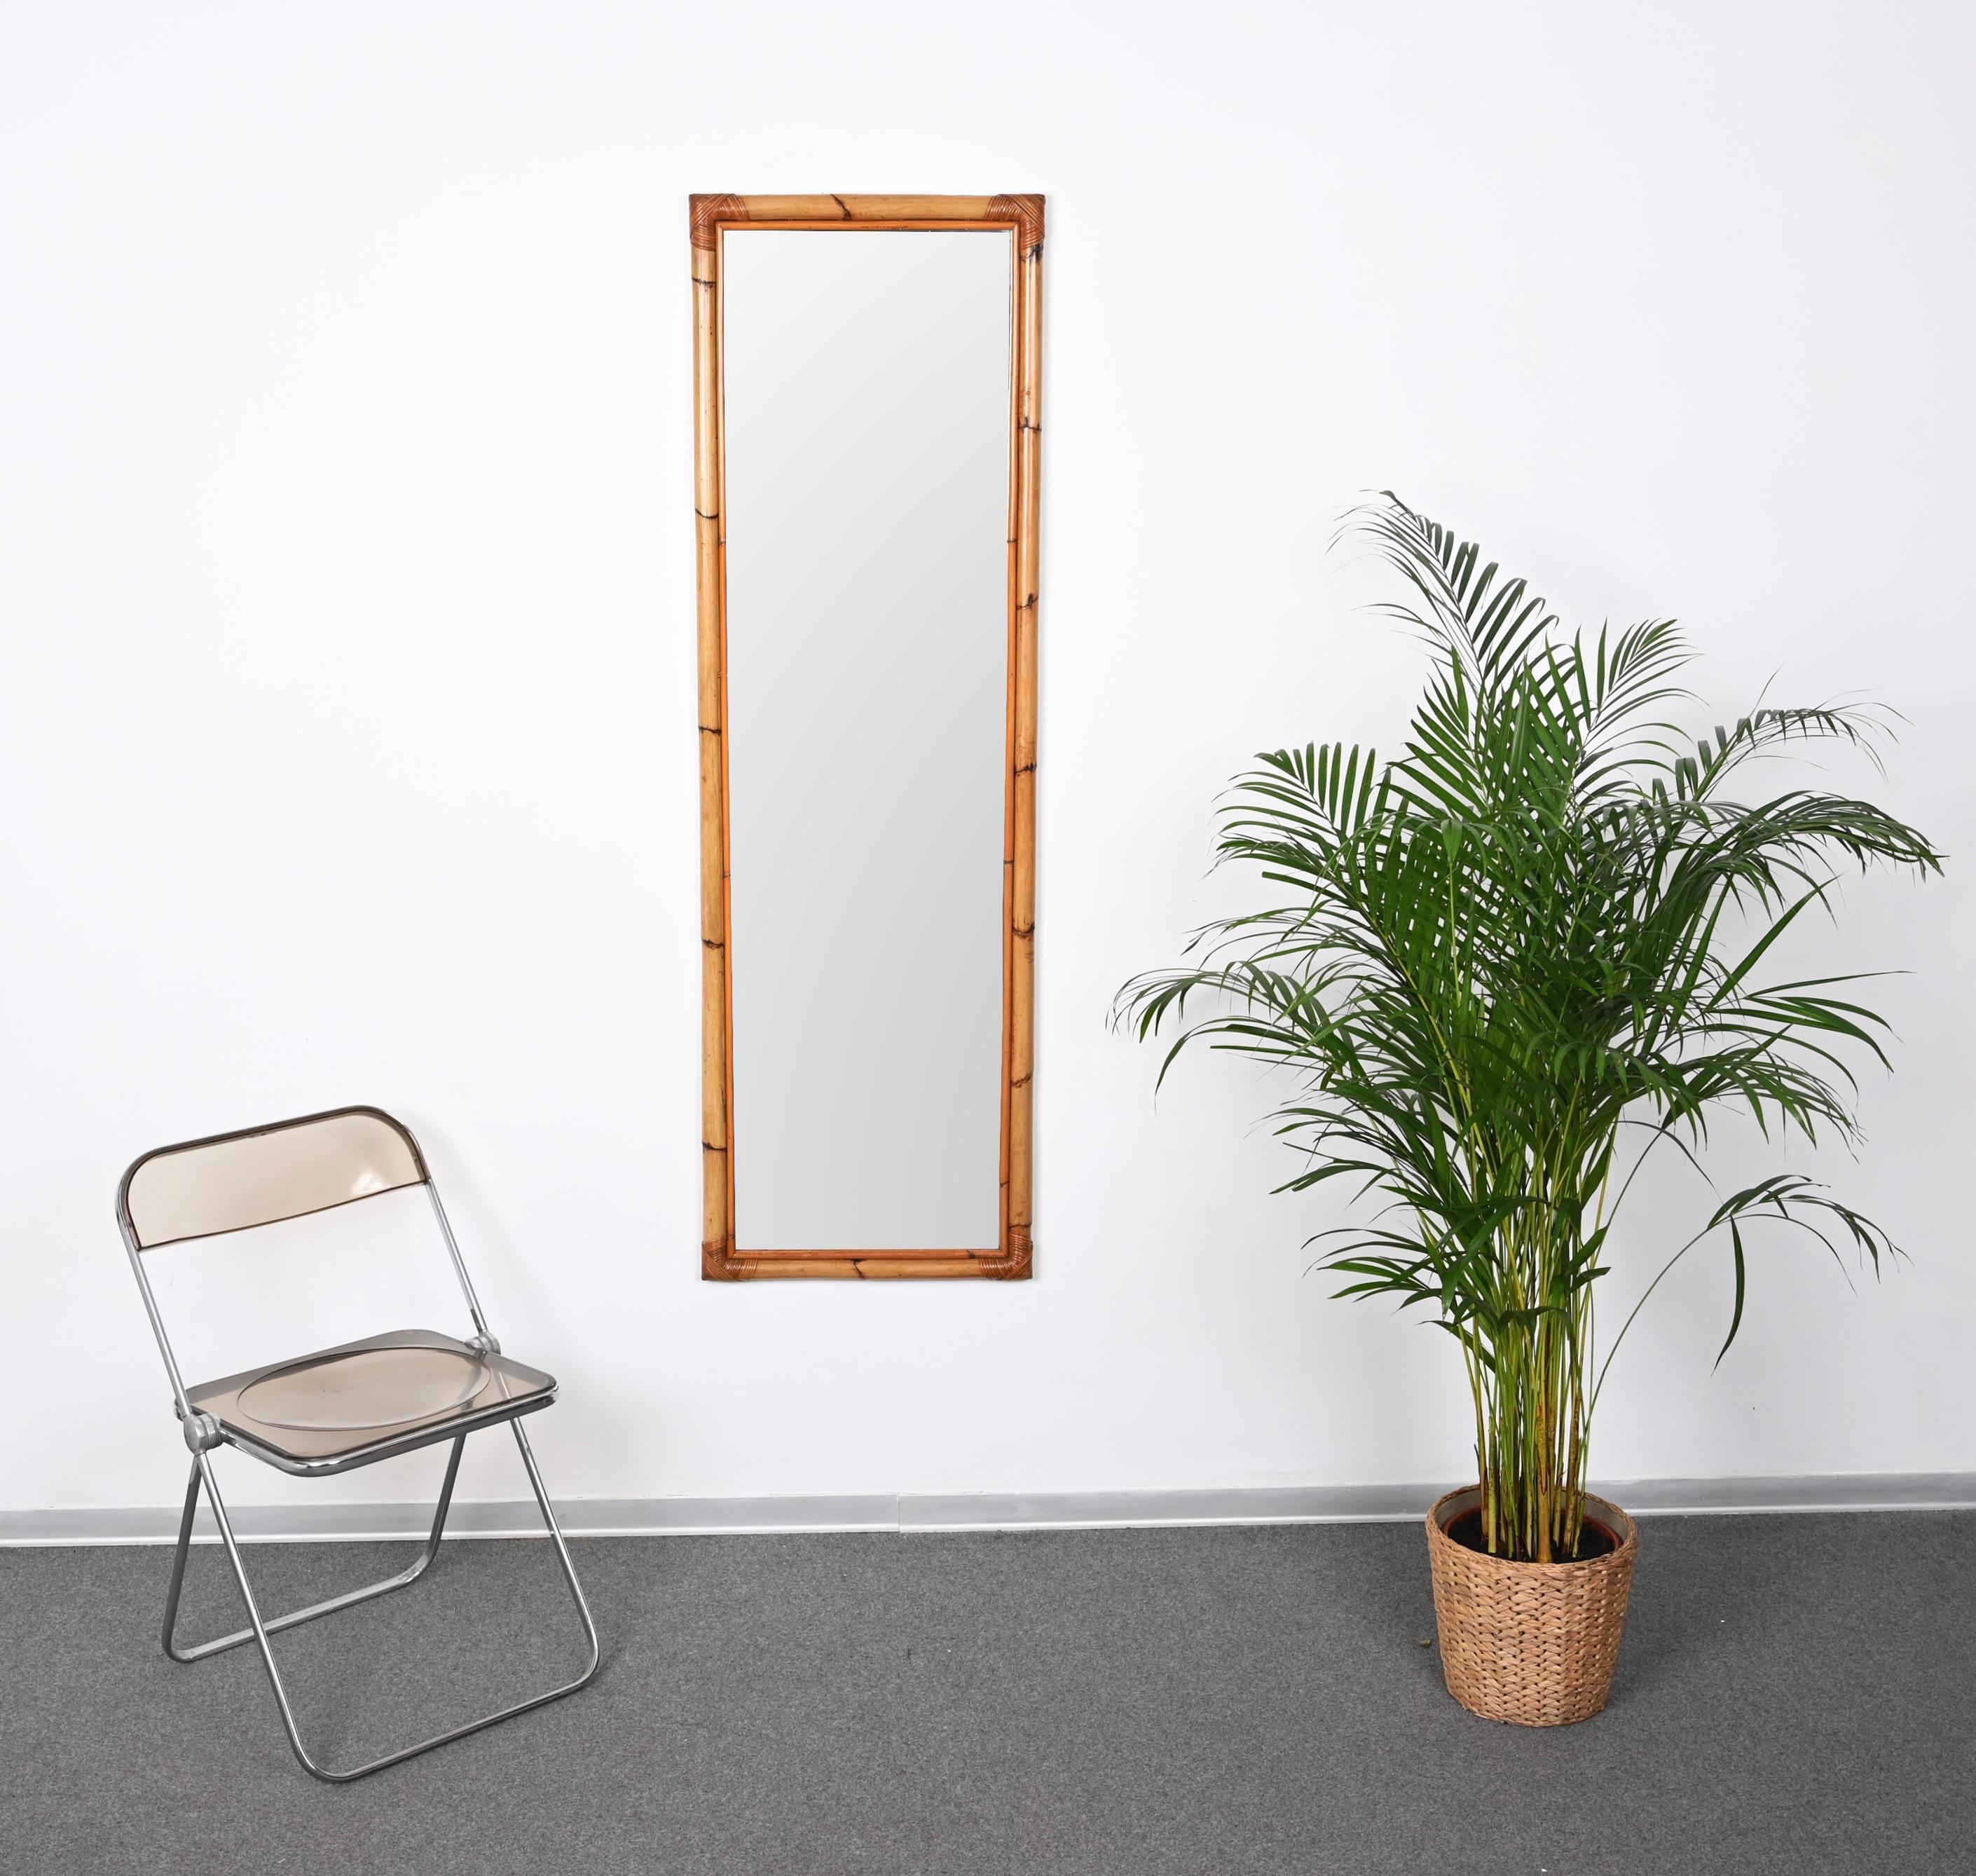 Atemberaubender rechteckiger Spiegel aus Bambus und Weidengeflecht in voller Länge aus der Mitte des Jahrhunderts. Dieses prächtige Stück wurde in den 1970er Jahren in Italien entworfen.

Dieser robuste Spiegel hat einen wunderschönen Doppelrahmen